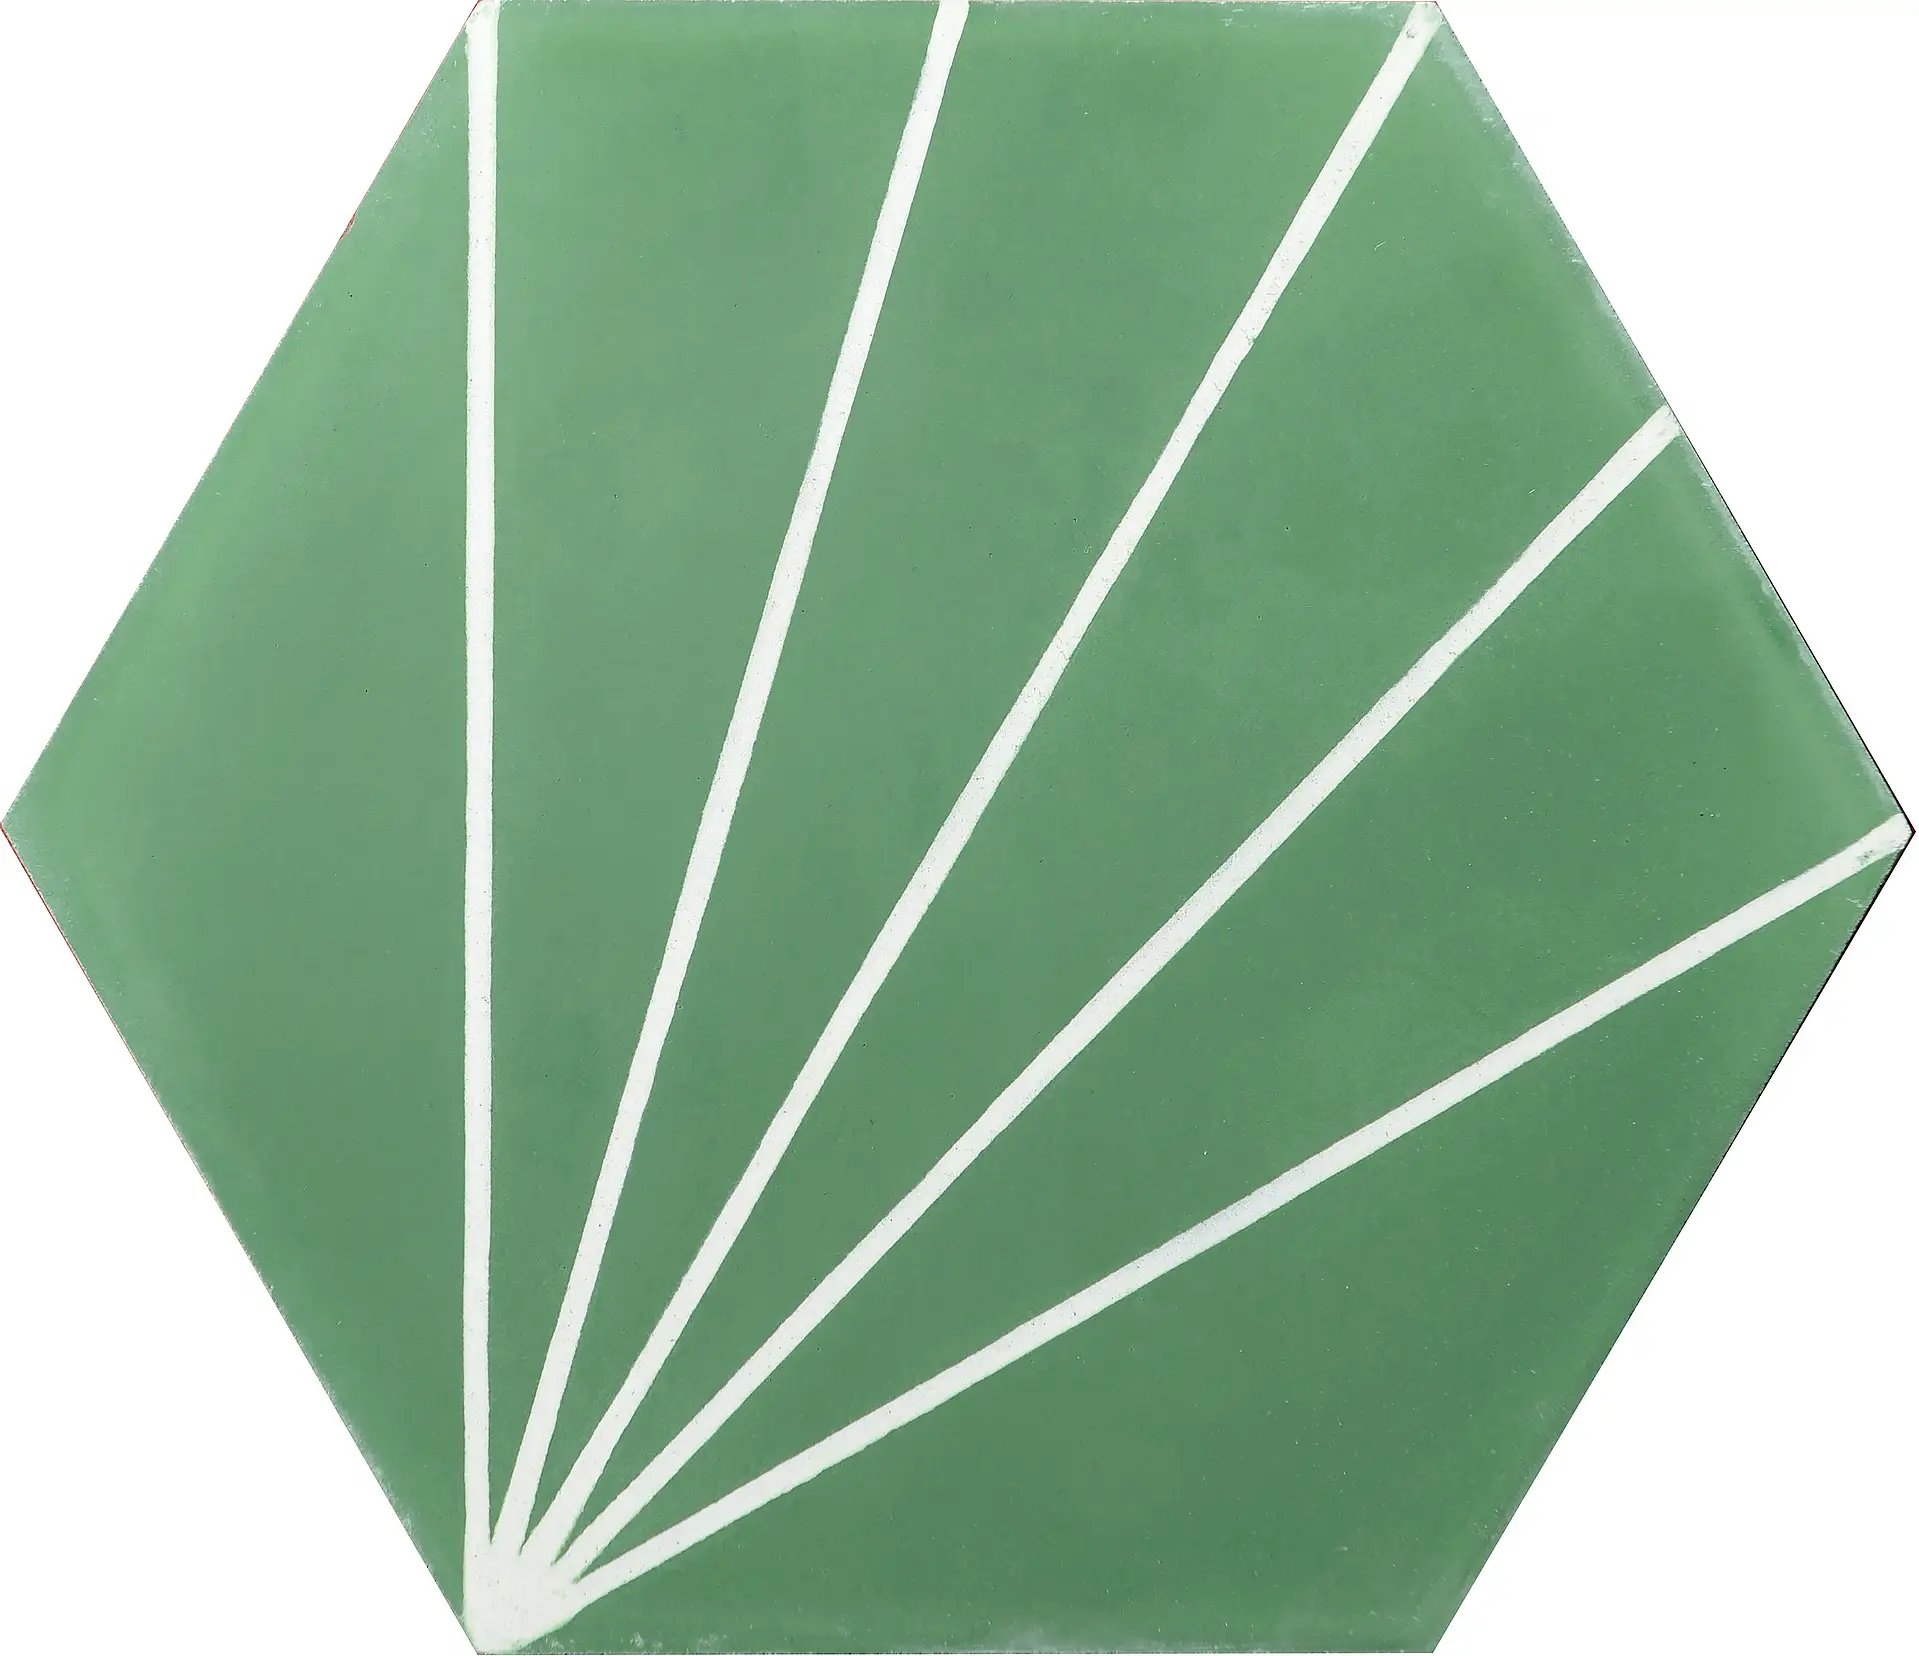 Marrakech Design, Claesson Koivisto Runes, Dandelion – pea green/pure white